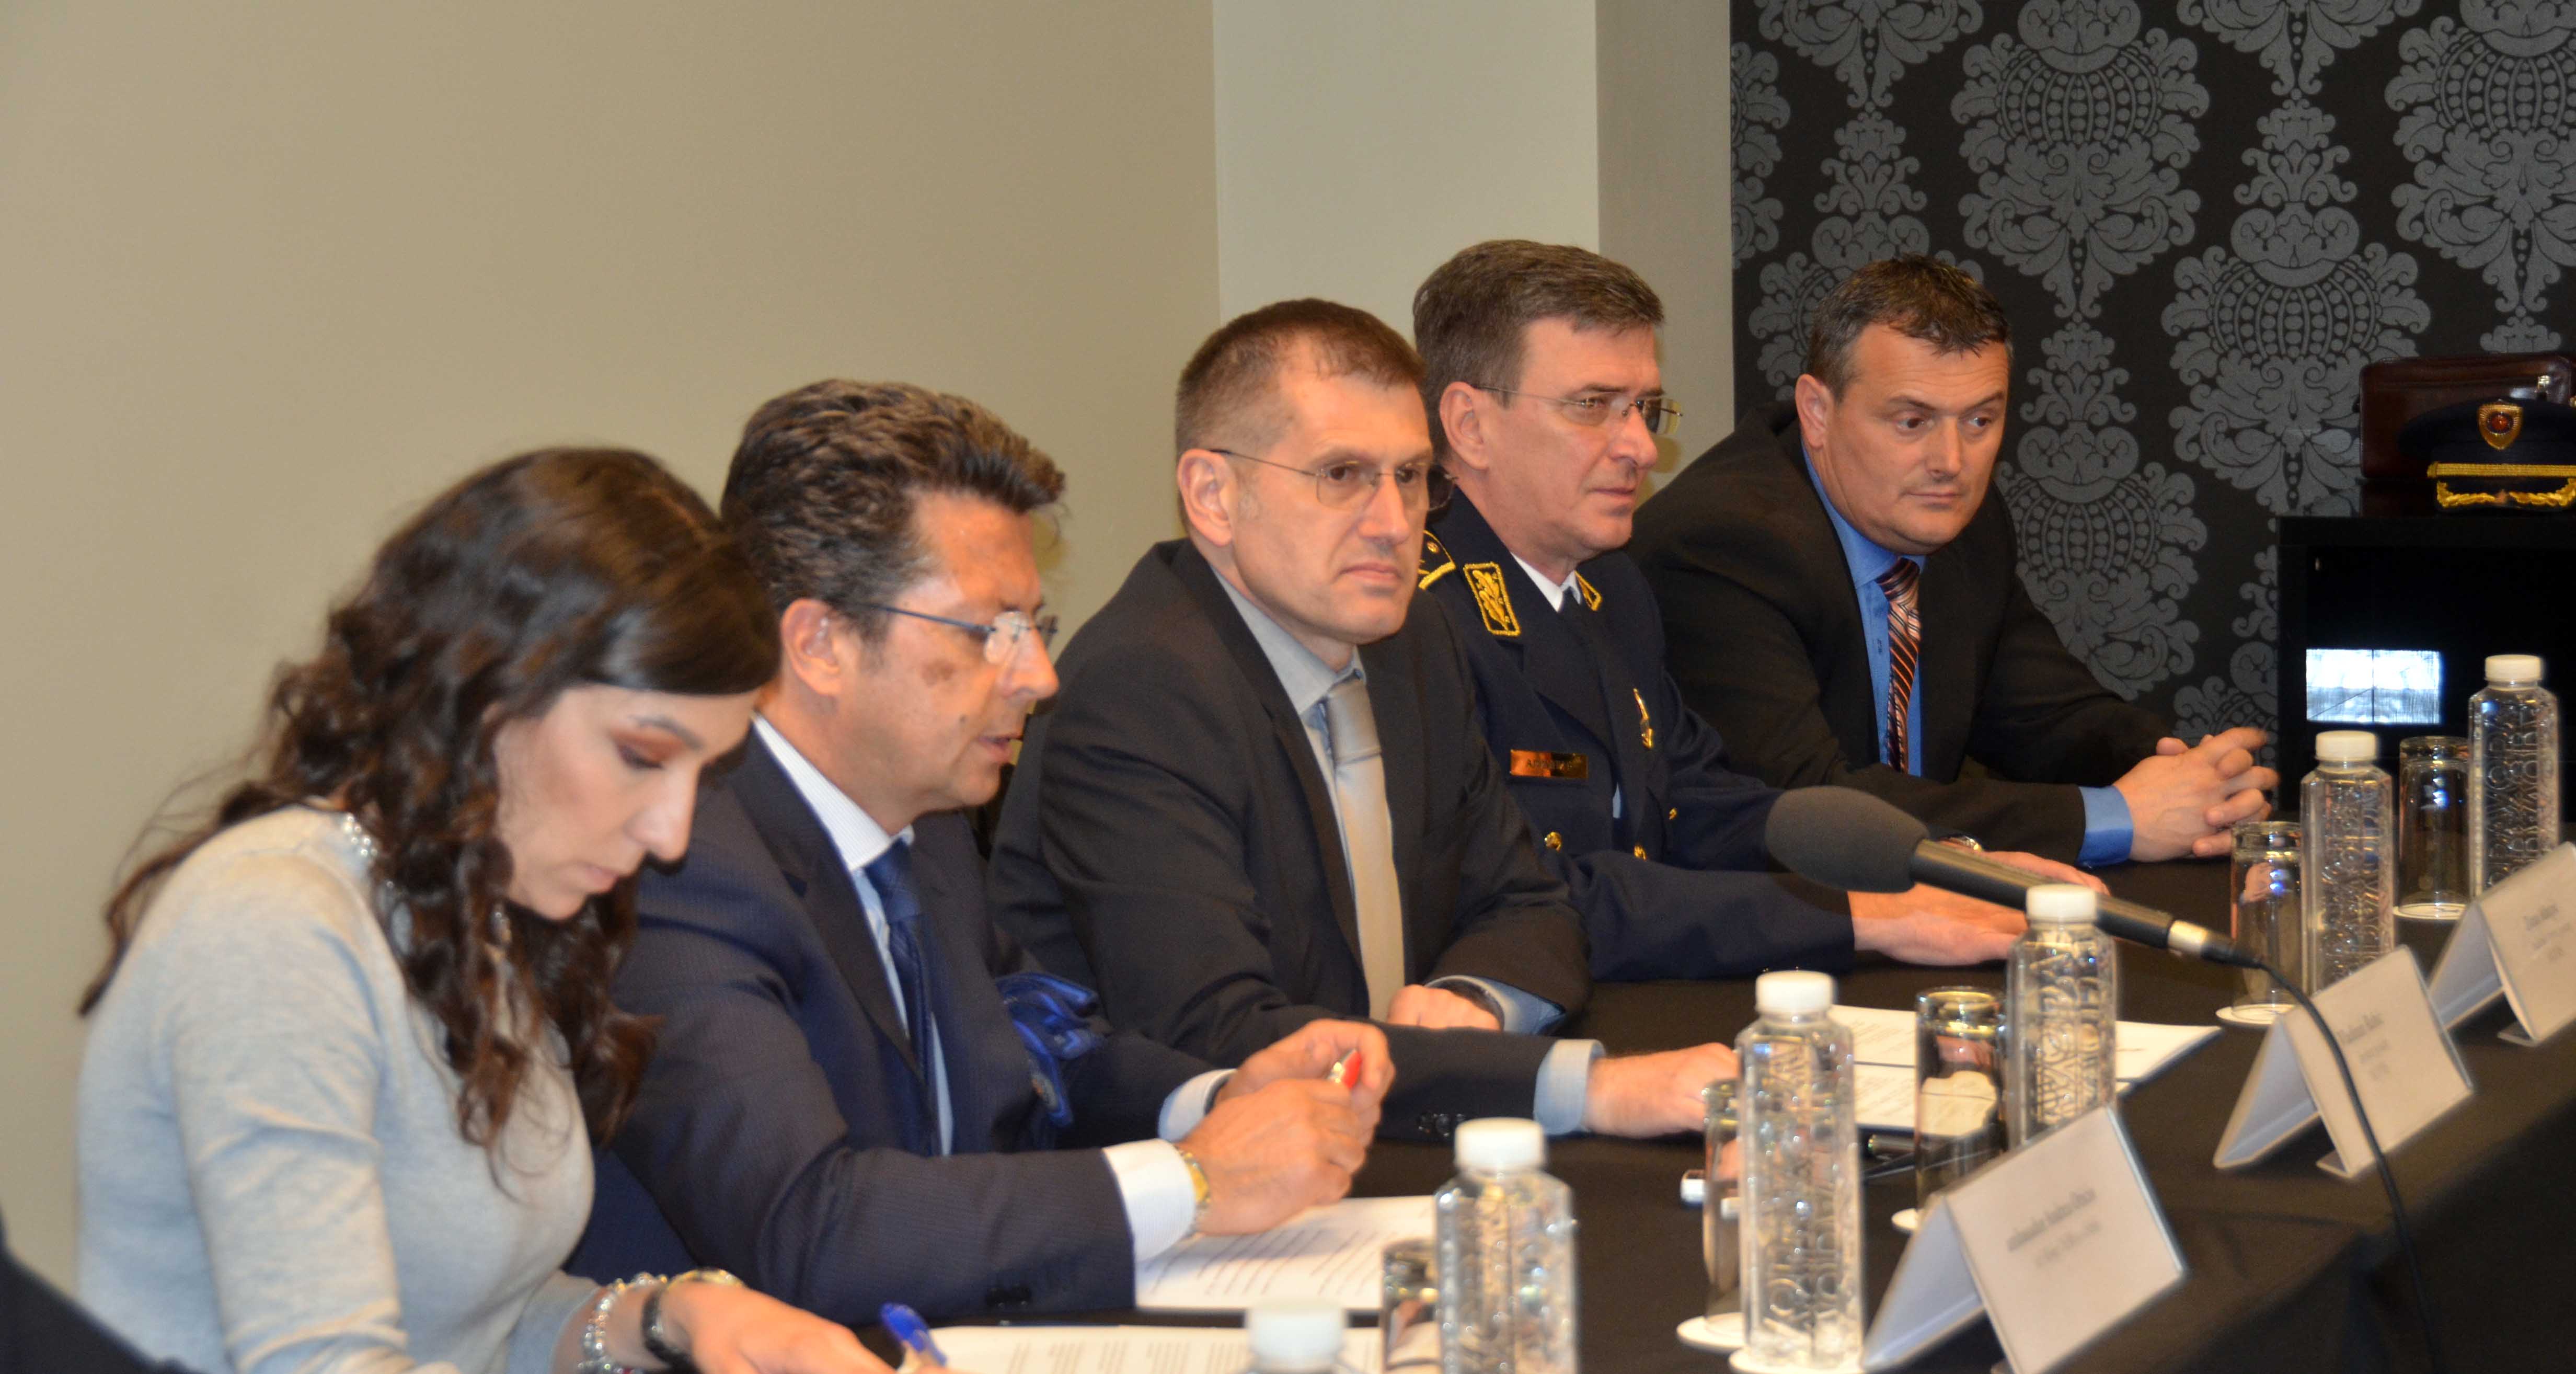 Završeni treninzi policijskih službenika u okviru projekta „Podrška prevencije nasilnog ekstremizma i terorizma u Republici Srbiji“